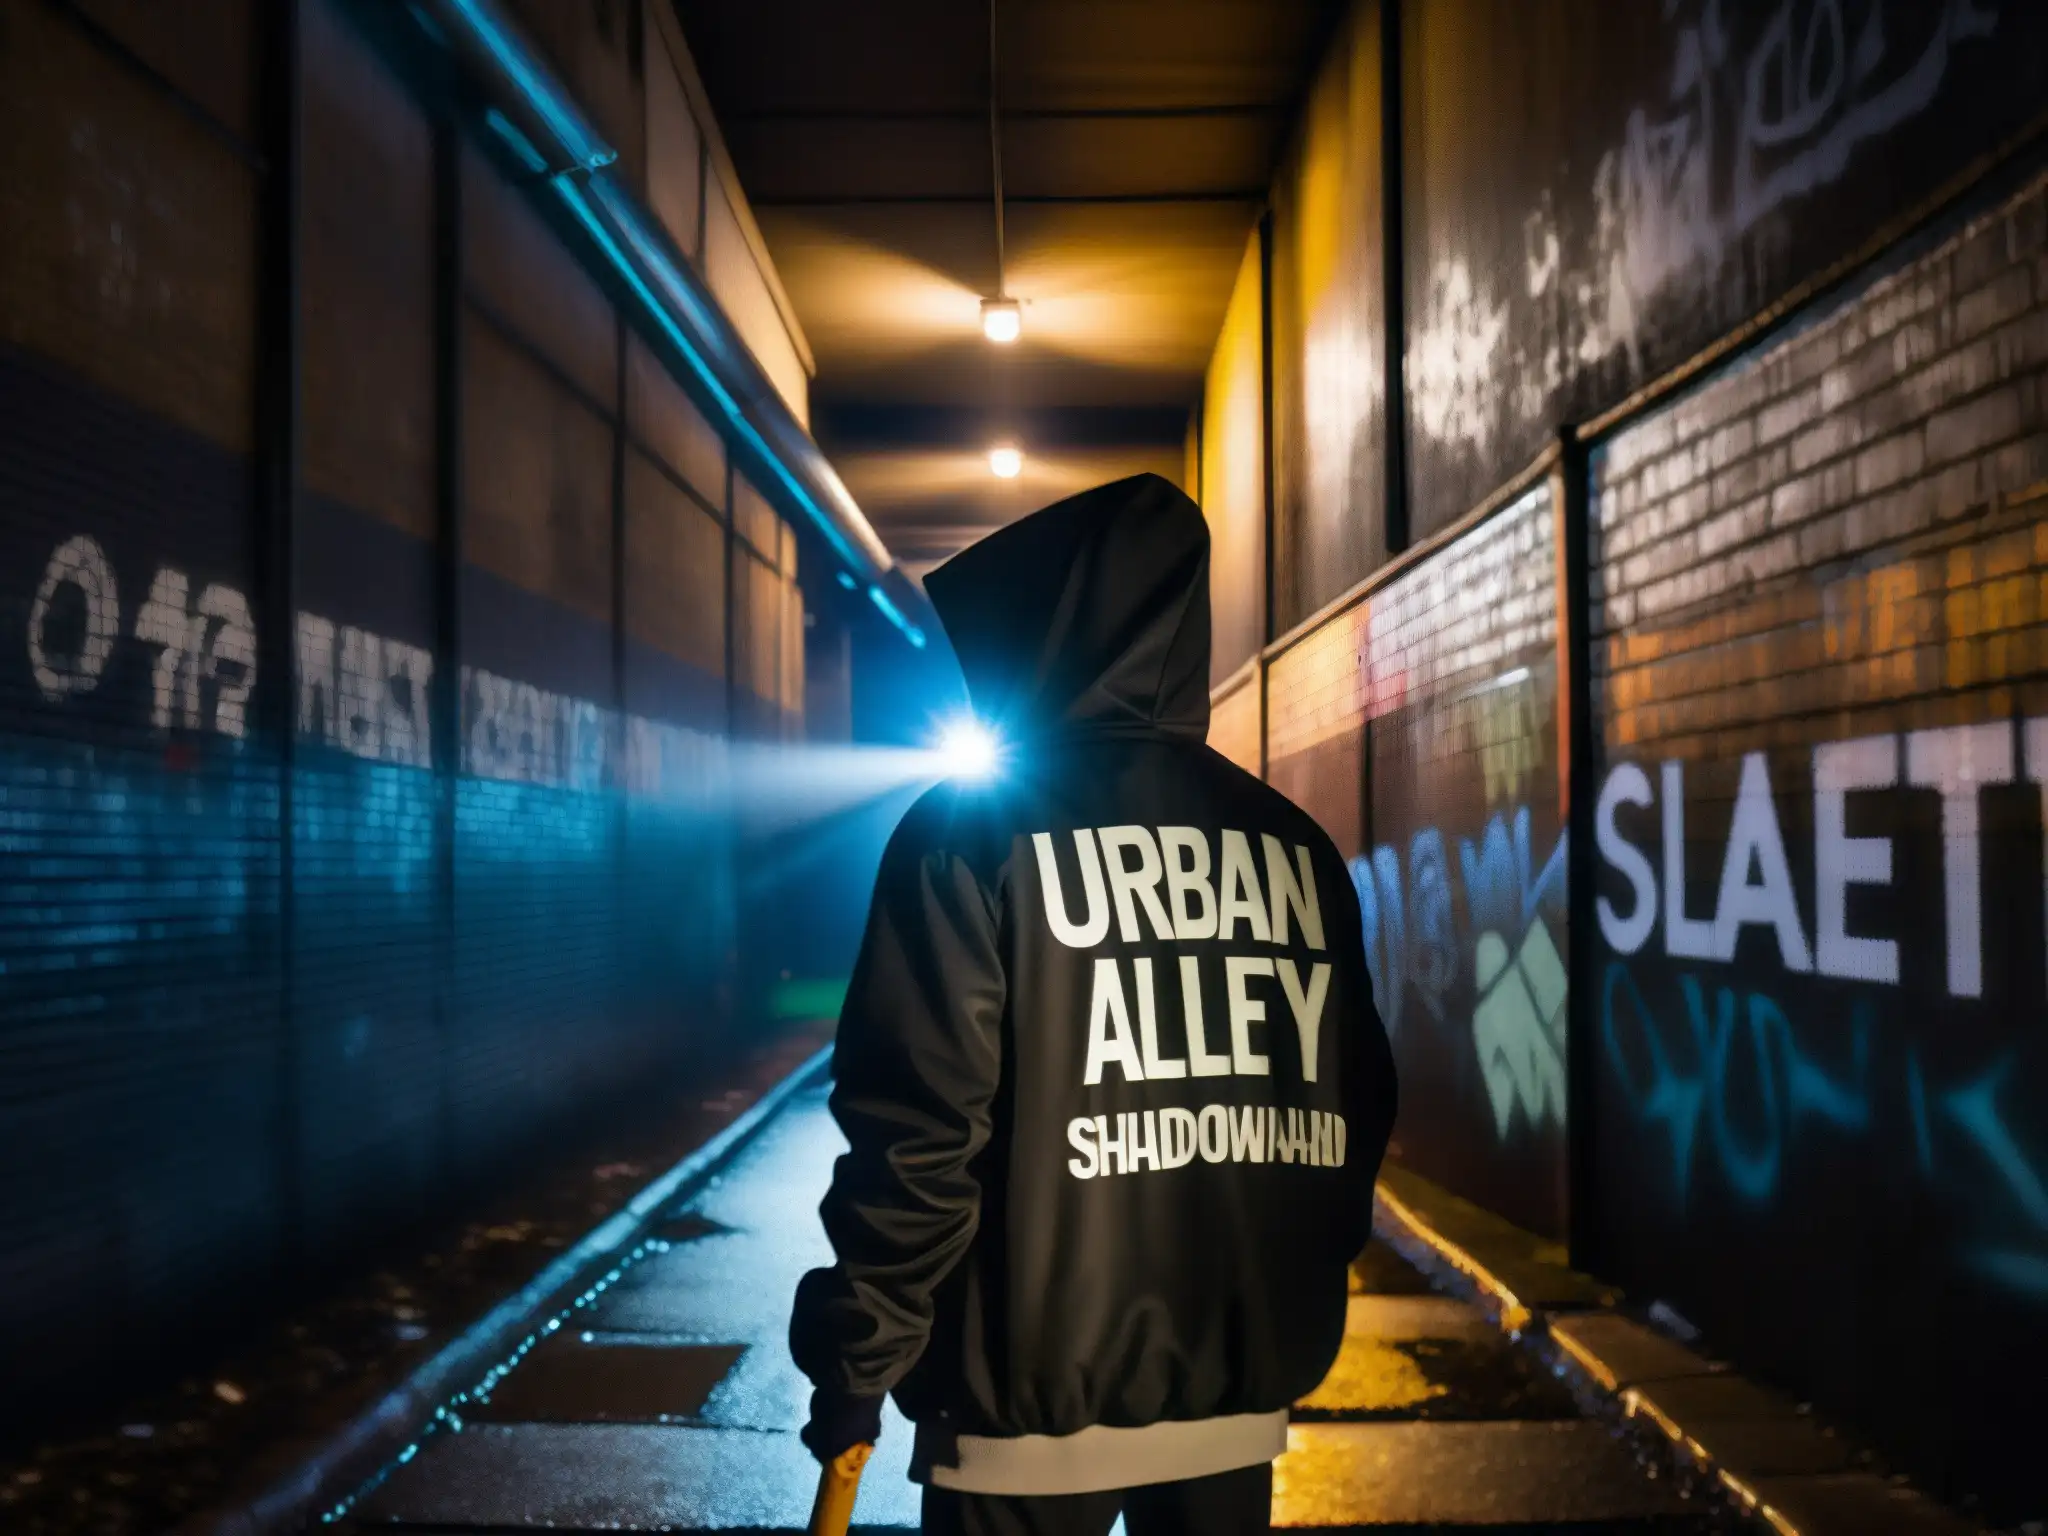 Un callejón urbano oscuro con grafitis, luces parpadeantes y una figura misteriosa con capucha sosteniendo un bate de béisbol